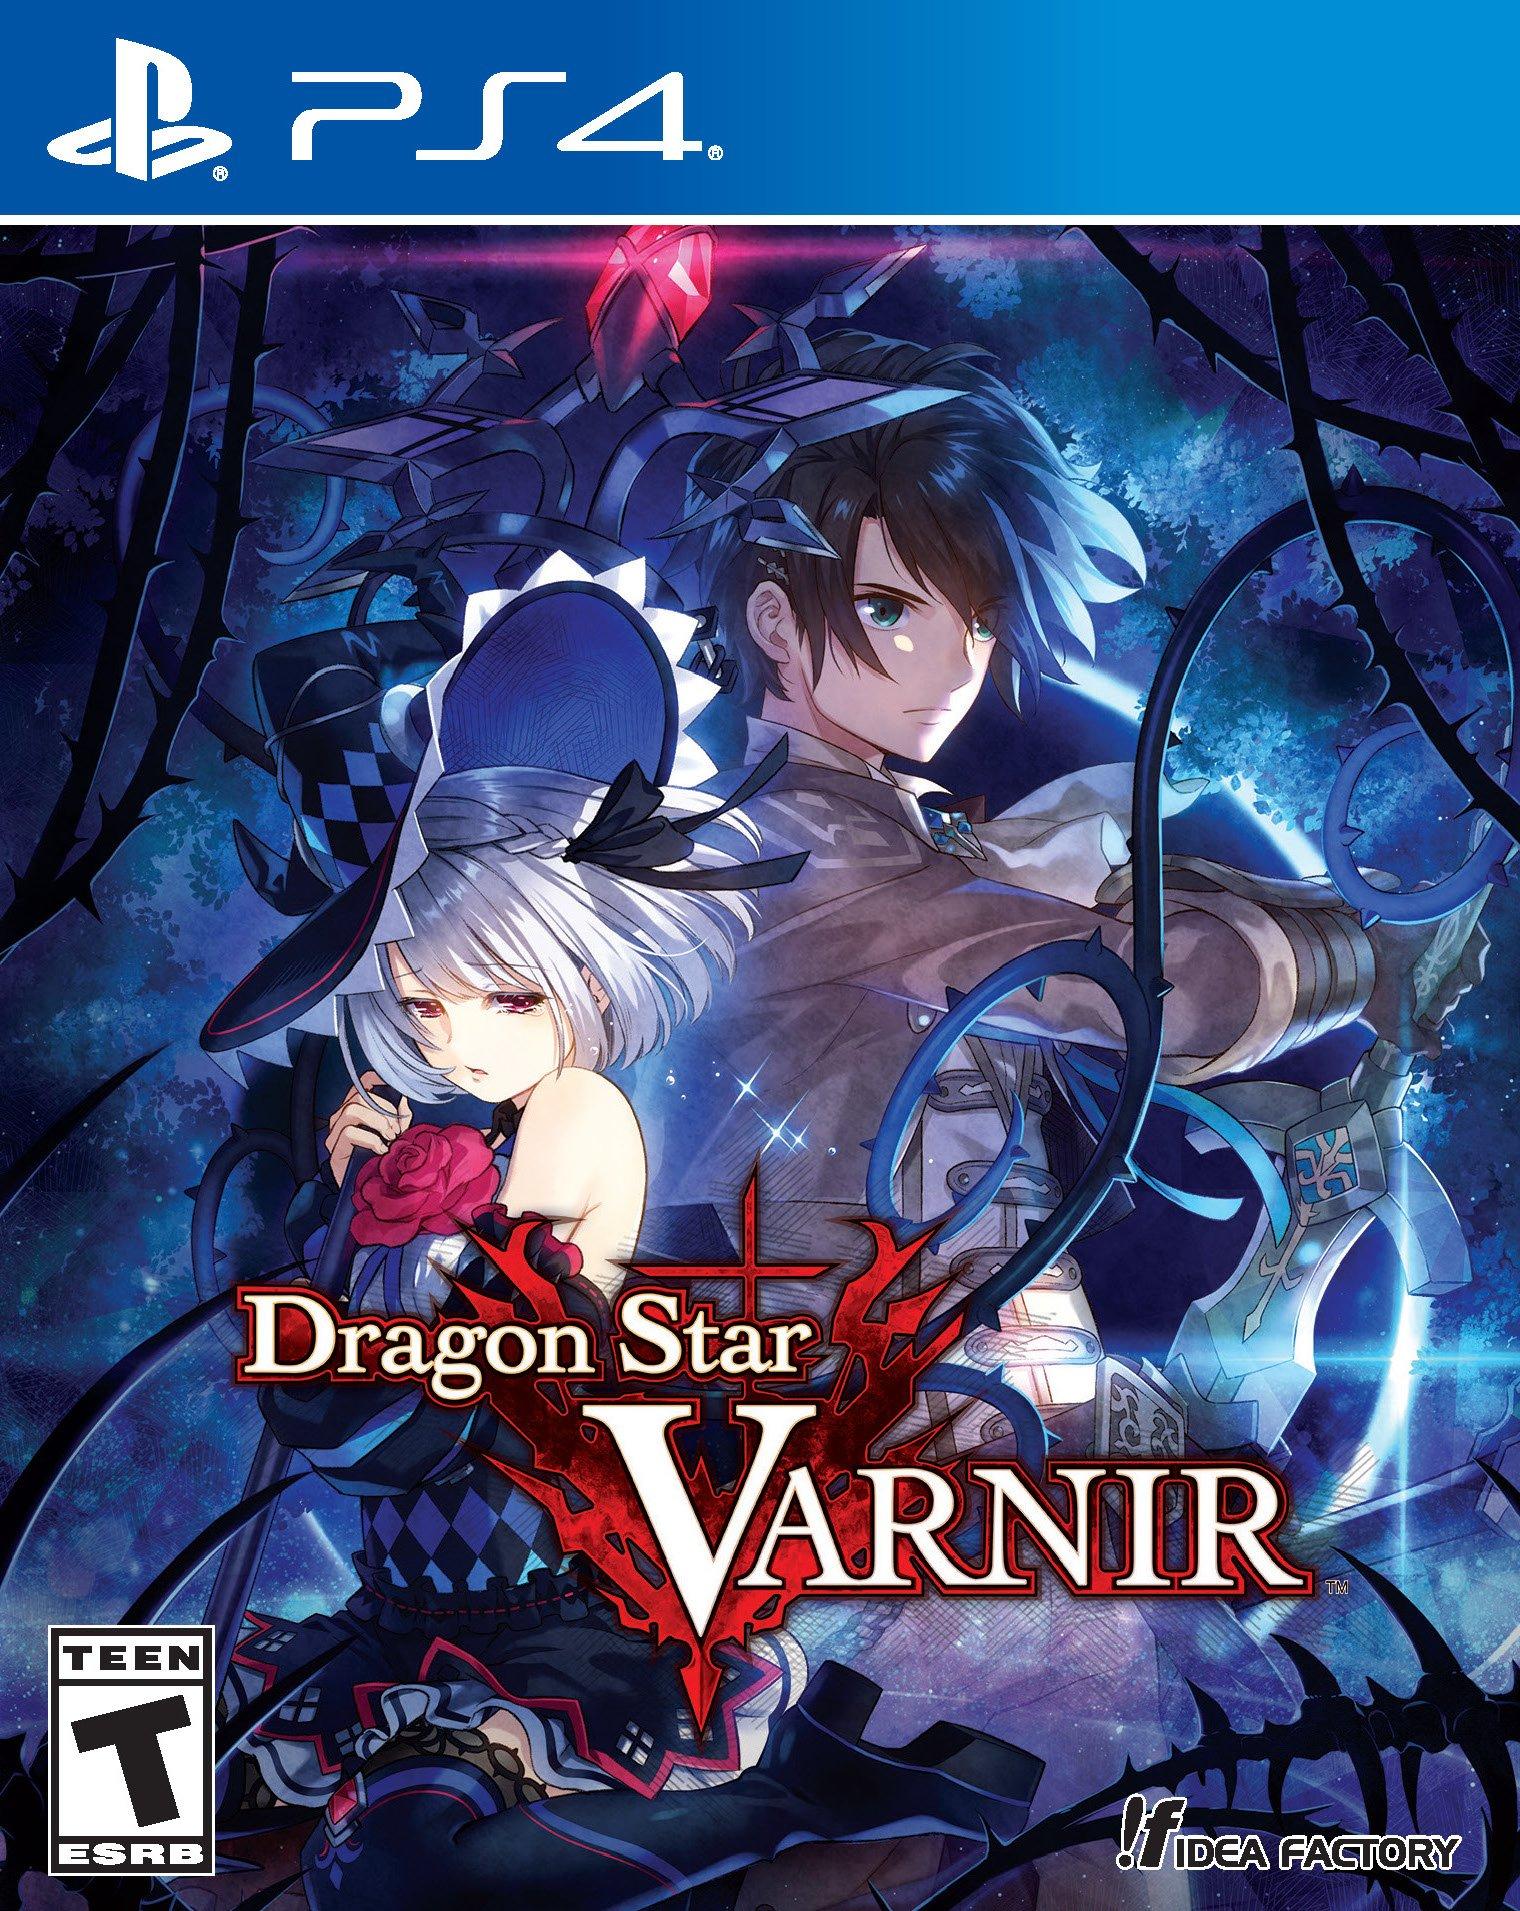 Dragon Star Varnir - PlayStation 4